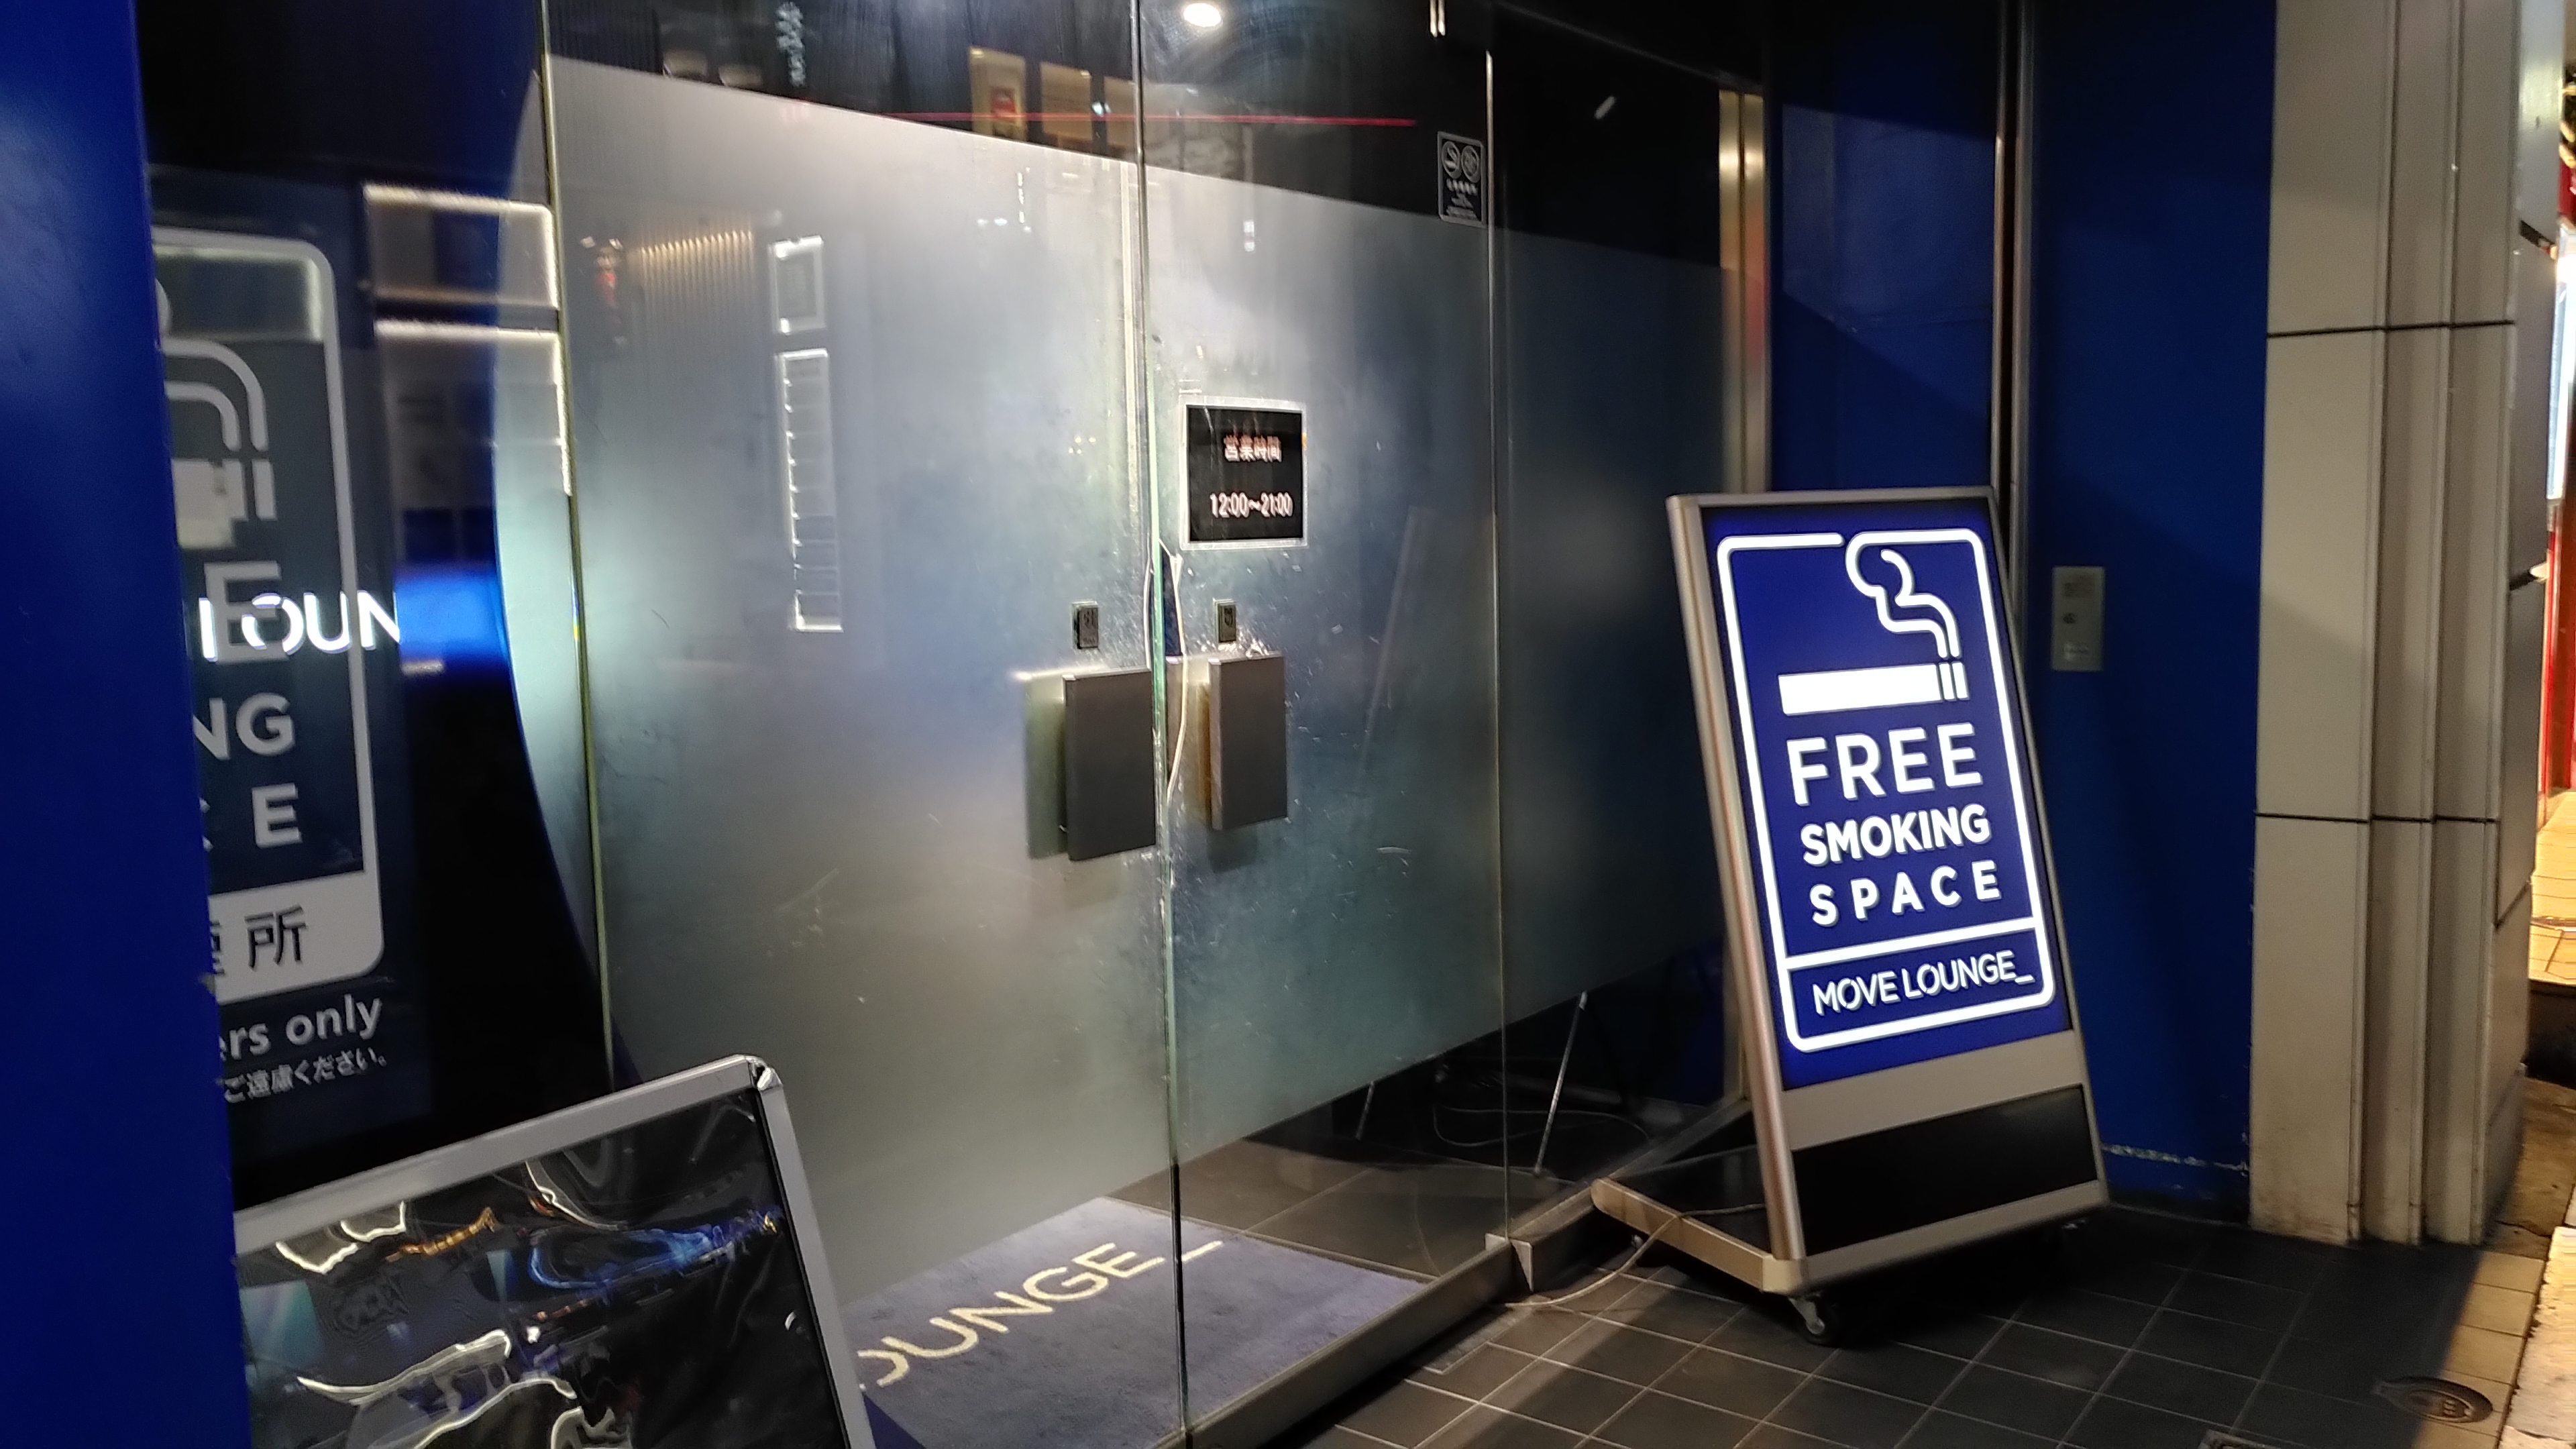 Blick auf eine Glastür vor der ein Schild mit der Aufschrift "Free Smoking Space" steht.